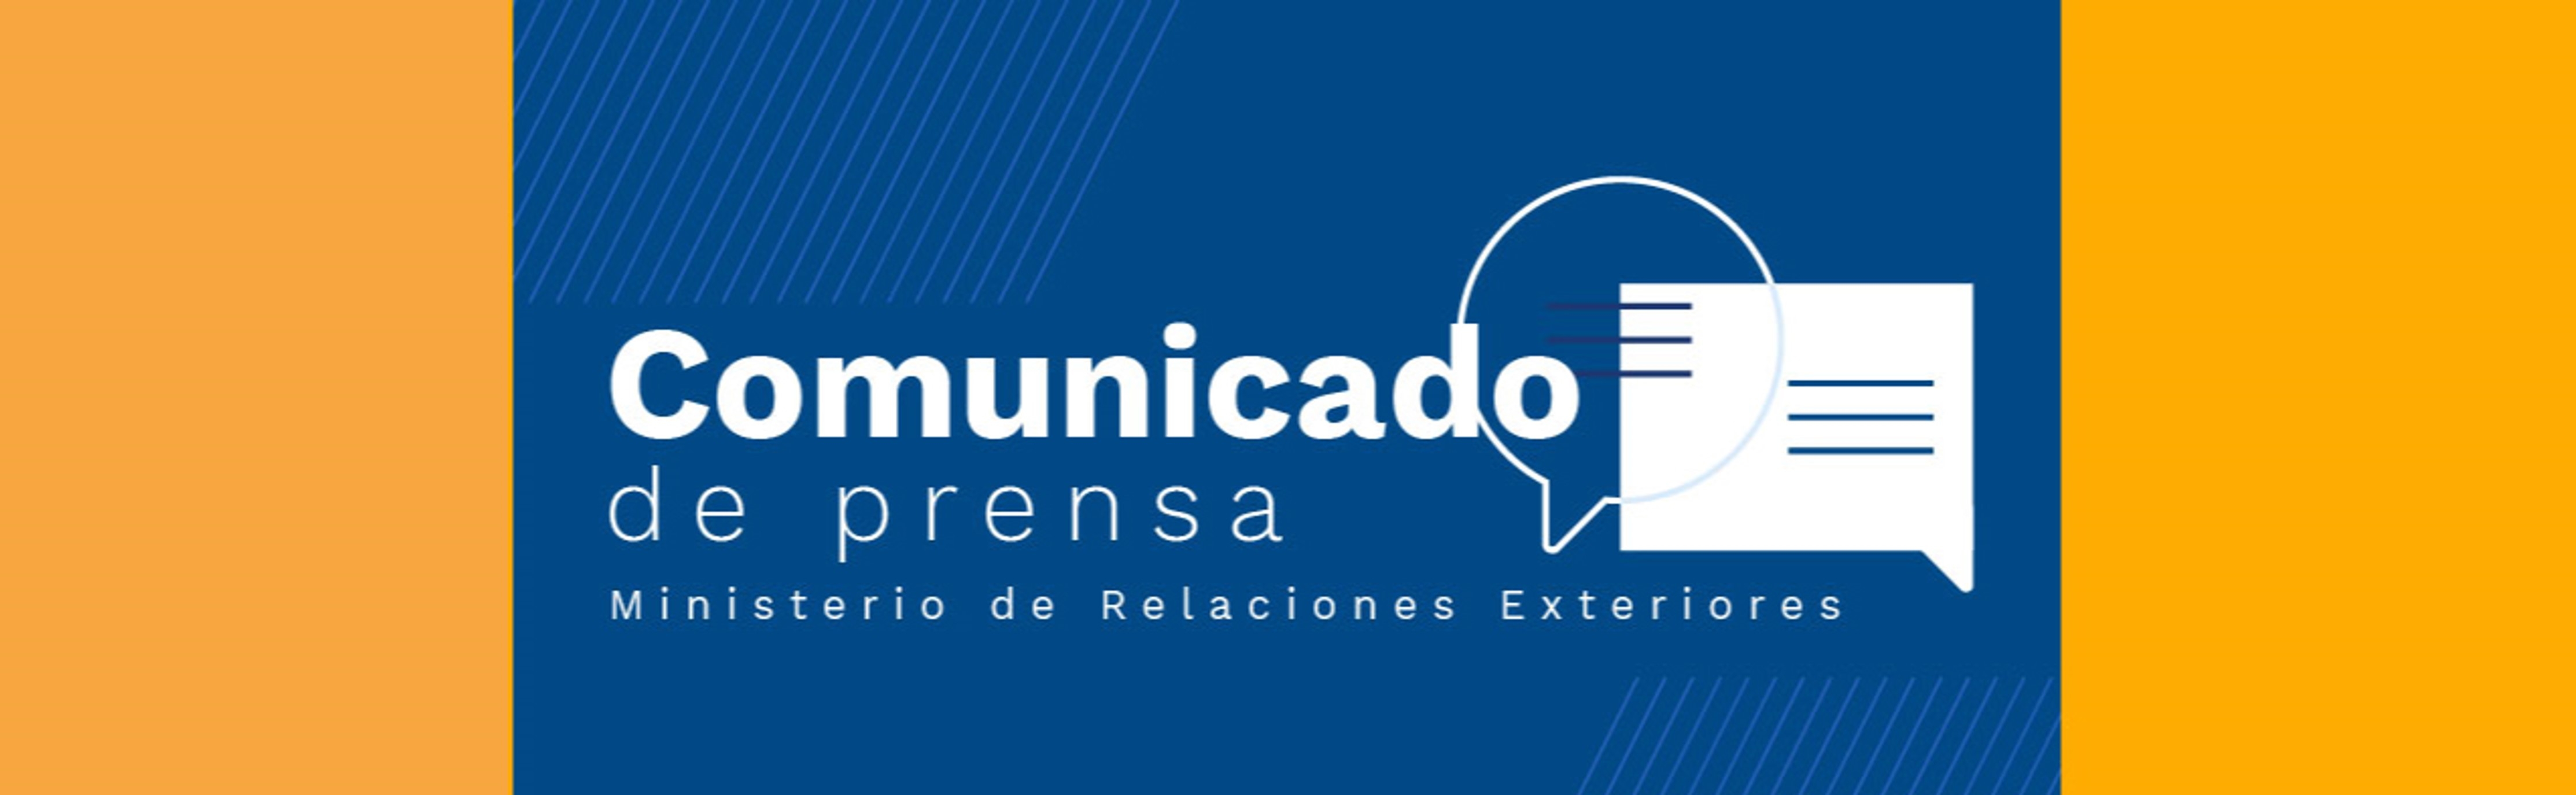 Comunicado de Prensa del Ministerio de Relaciones Exteriores de Colombia